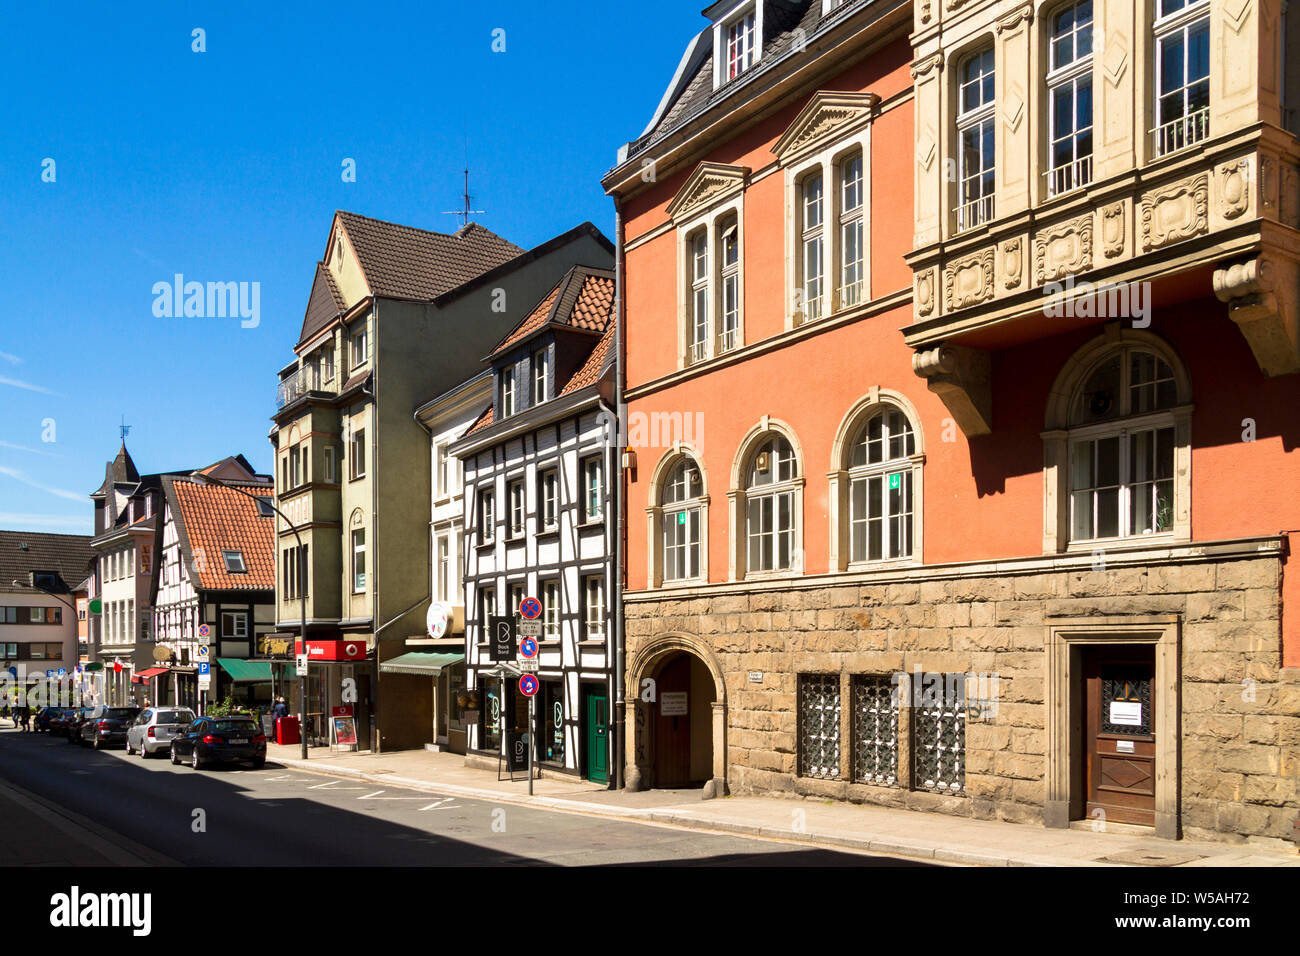 Auf der rechten Seite das Alte Rathaus auf dem Marktplatz im Stadtteil Werdener, Häuser auf dem Brueckstreet, Essen, Ruhrgebiet, Deutschland. Rechts das Alte Ra Stockfoto